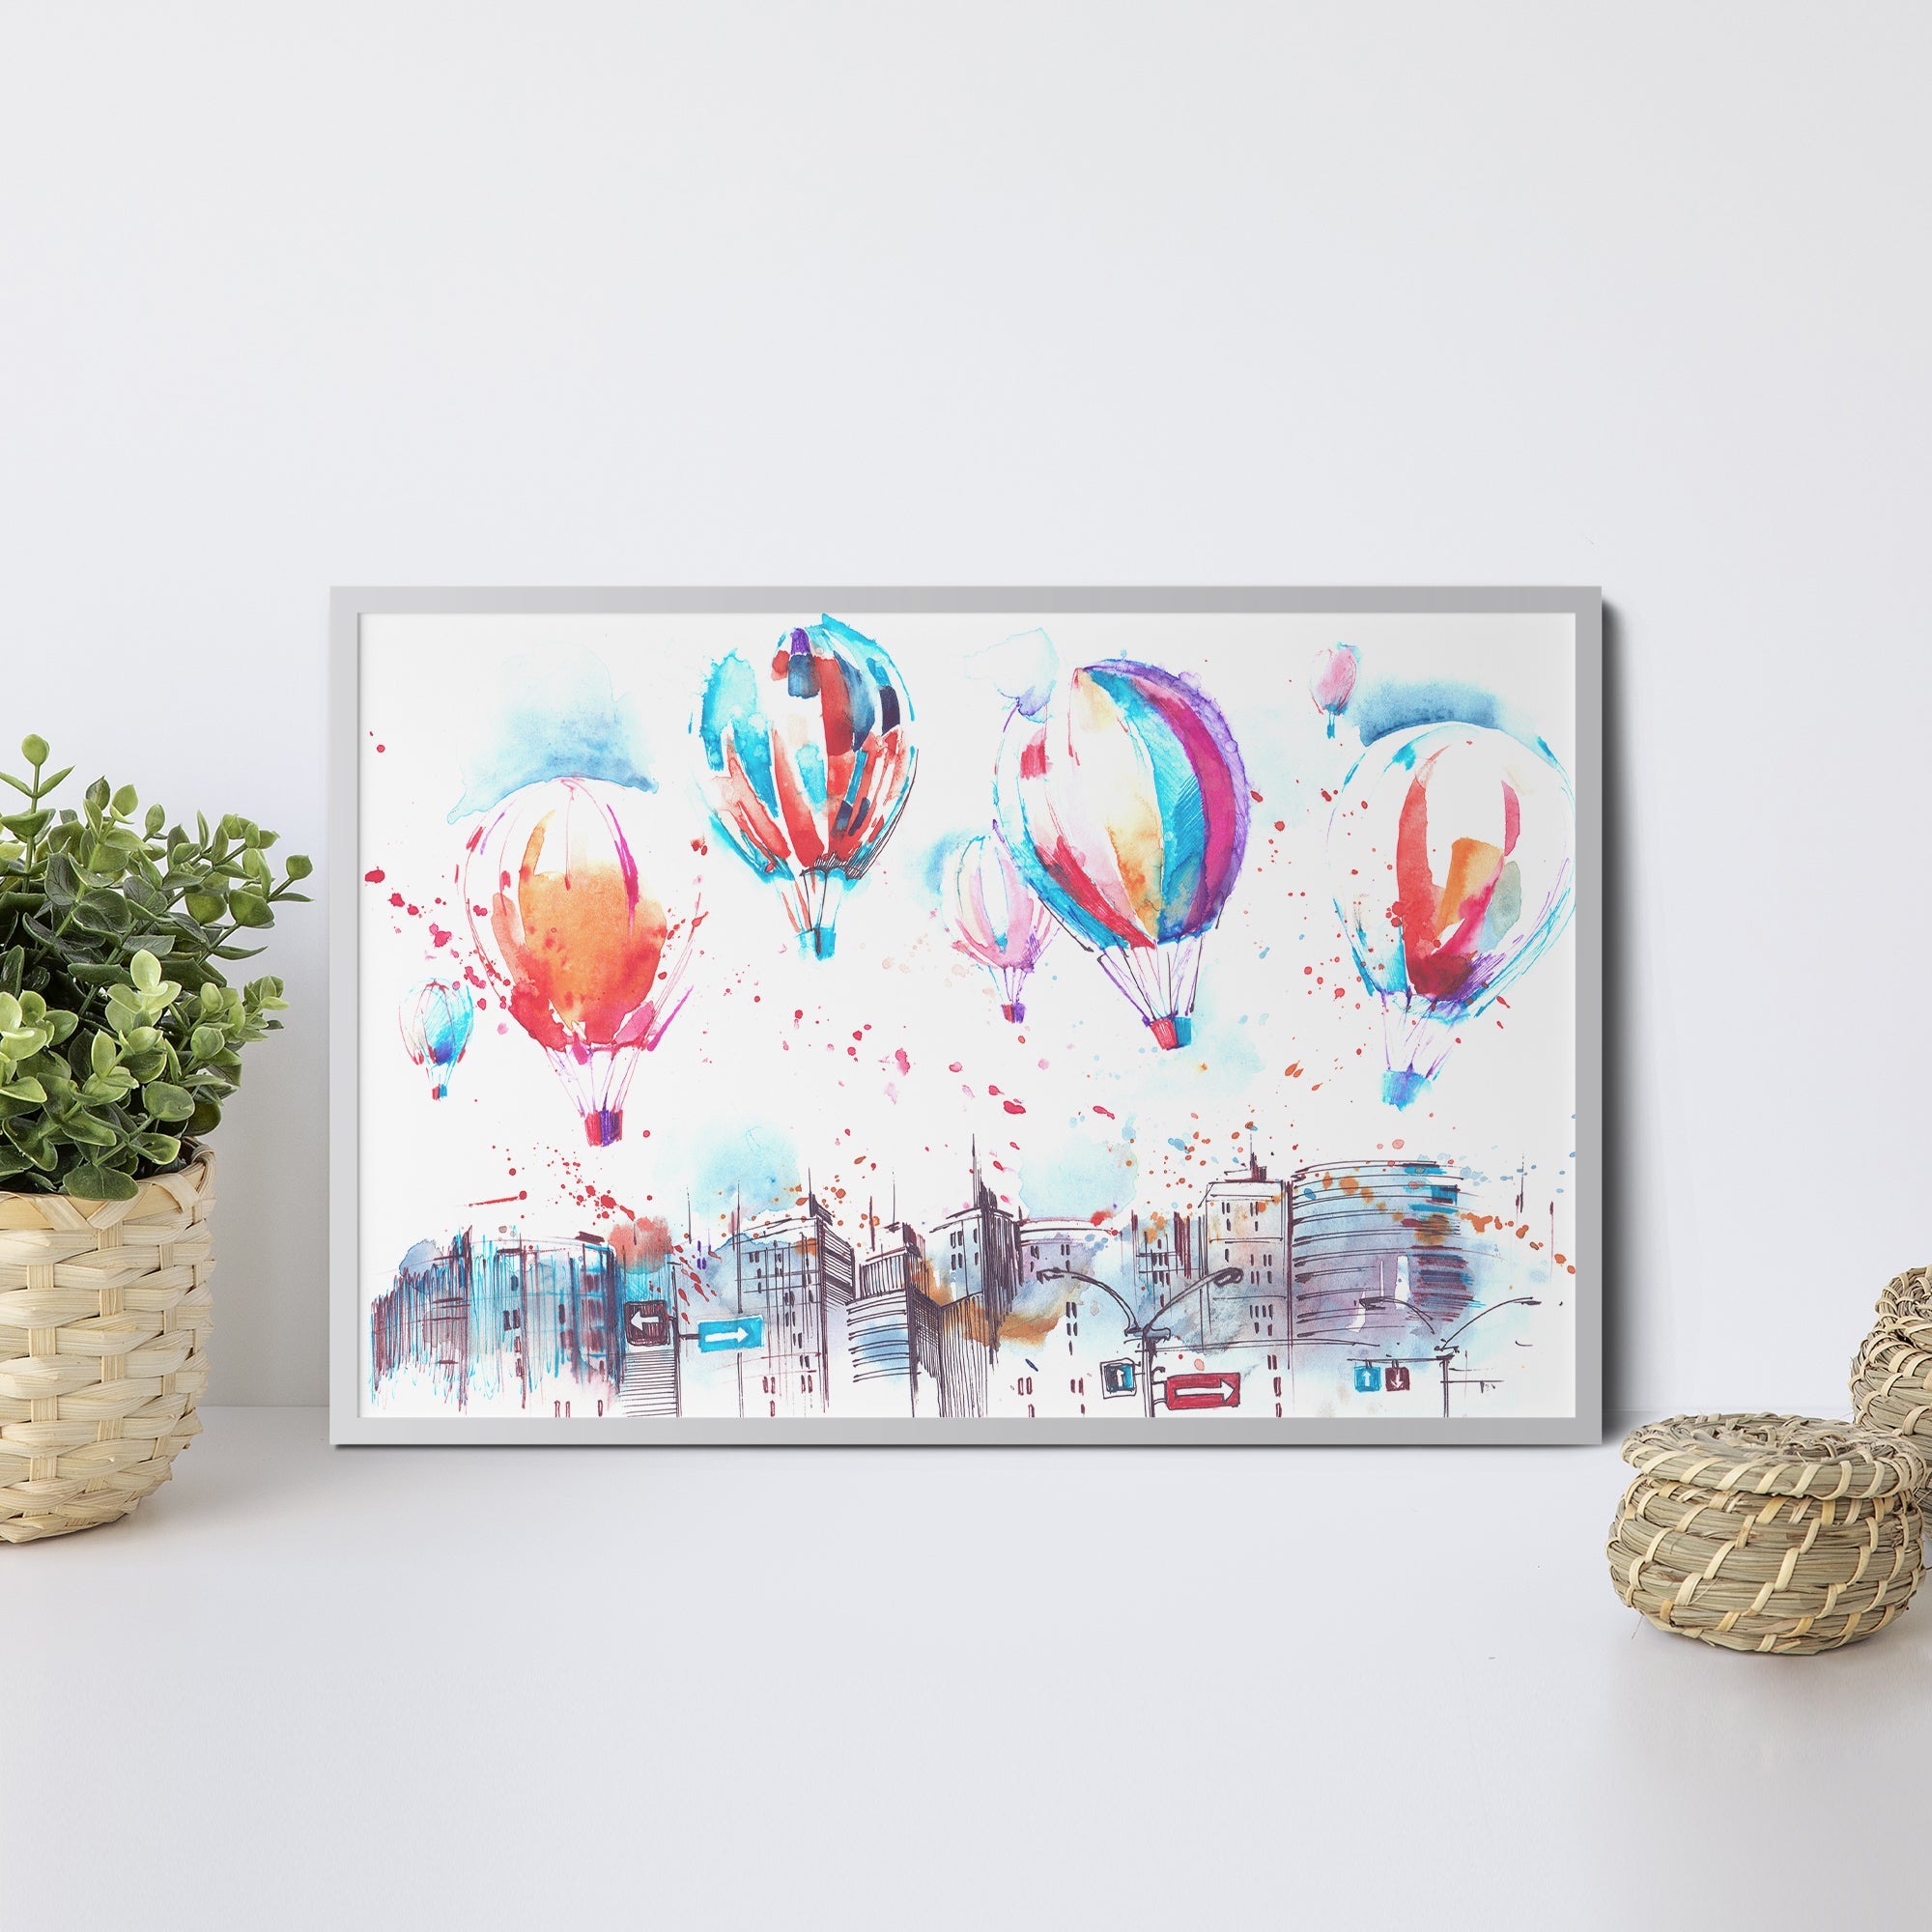 Foto obraz w ramie - Akwarela, balony nad miastem (kolorowy) - Gallart.pl